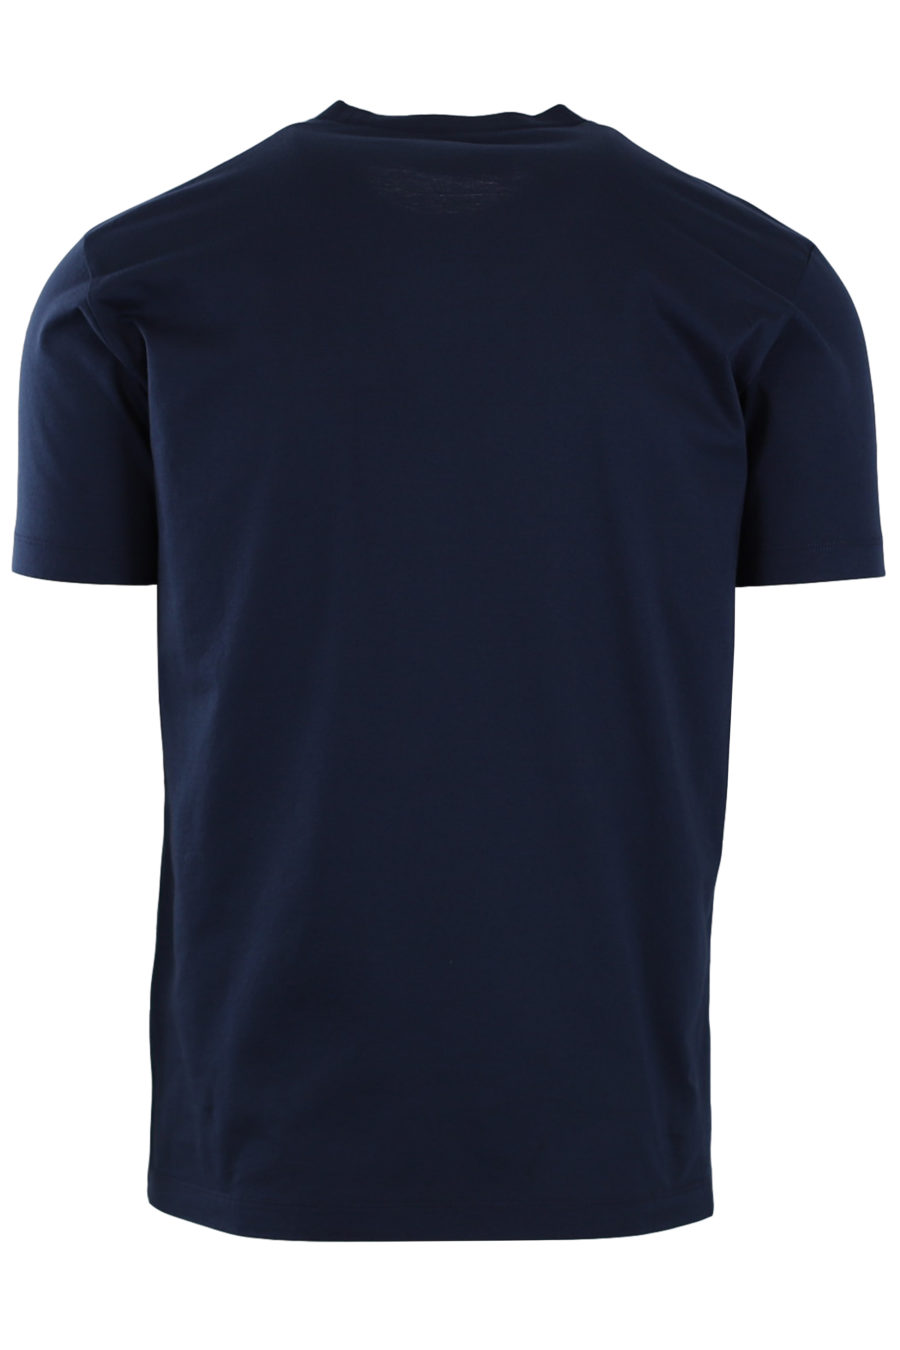 Blue T-shirt with white print "Ceresio 9 Milano" - 4103fa219855faf74e99345916a6867bad603aba